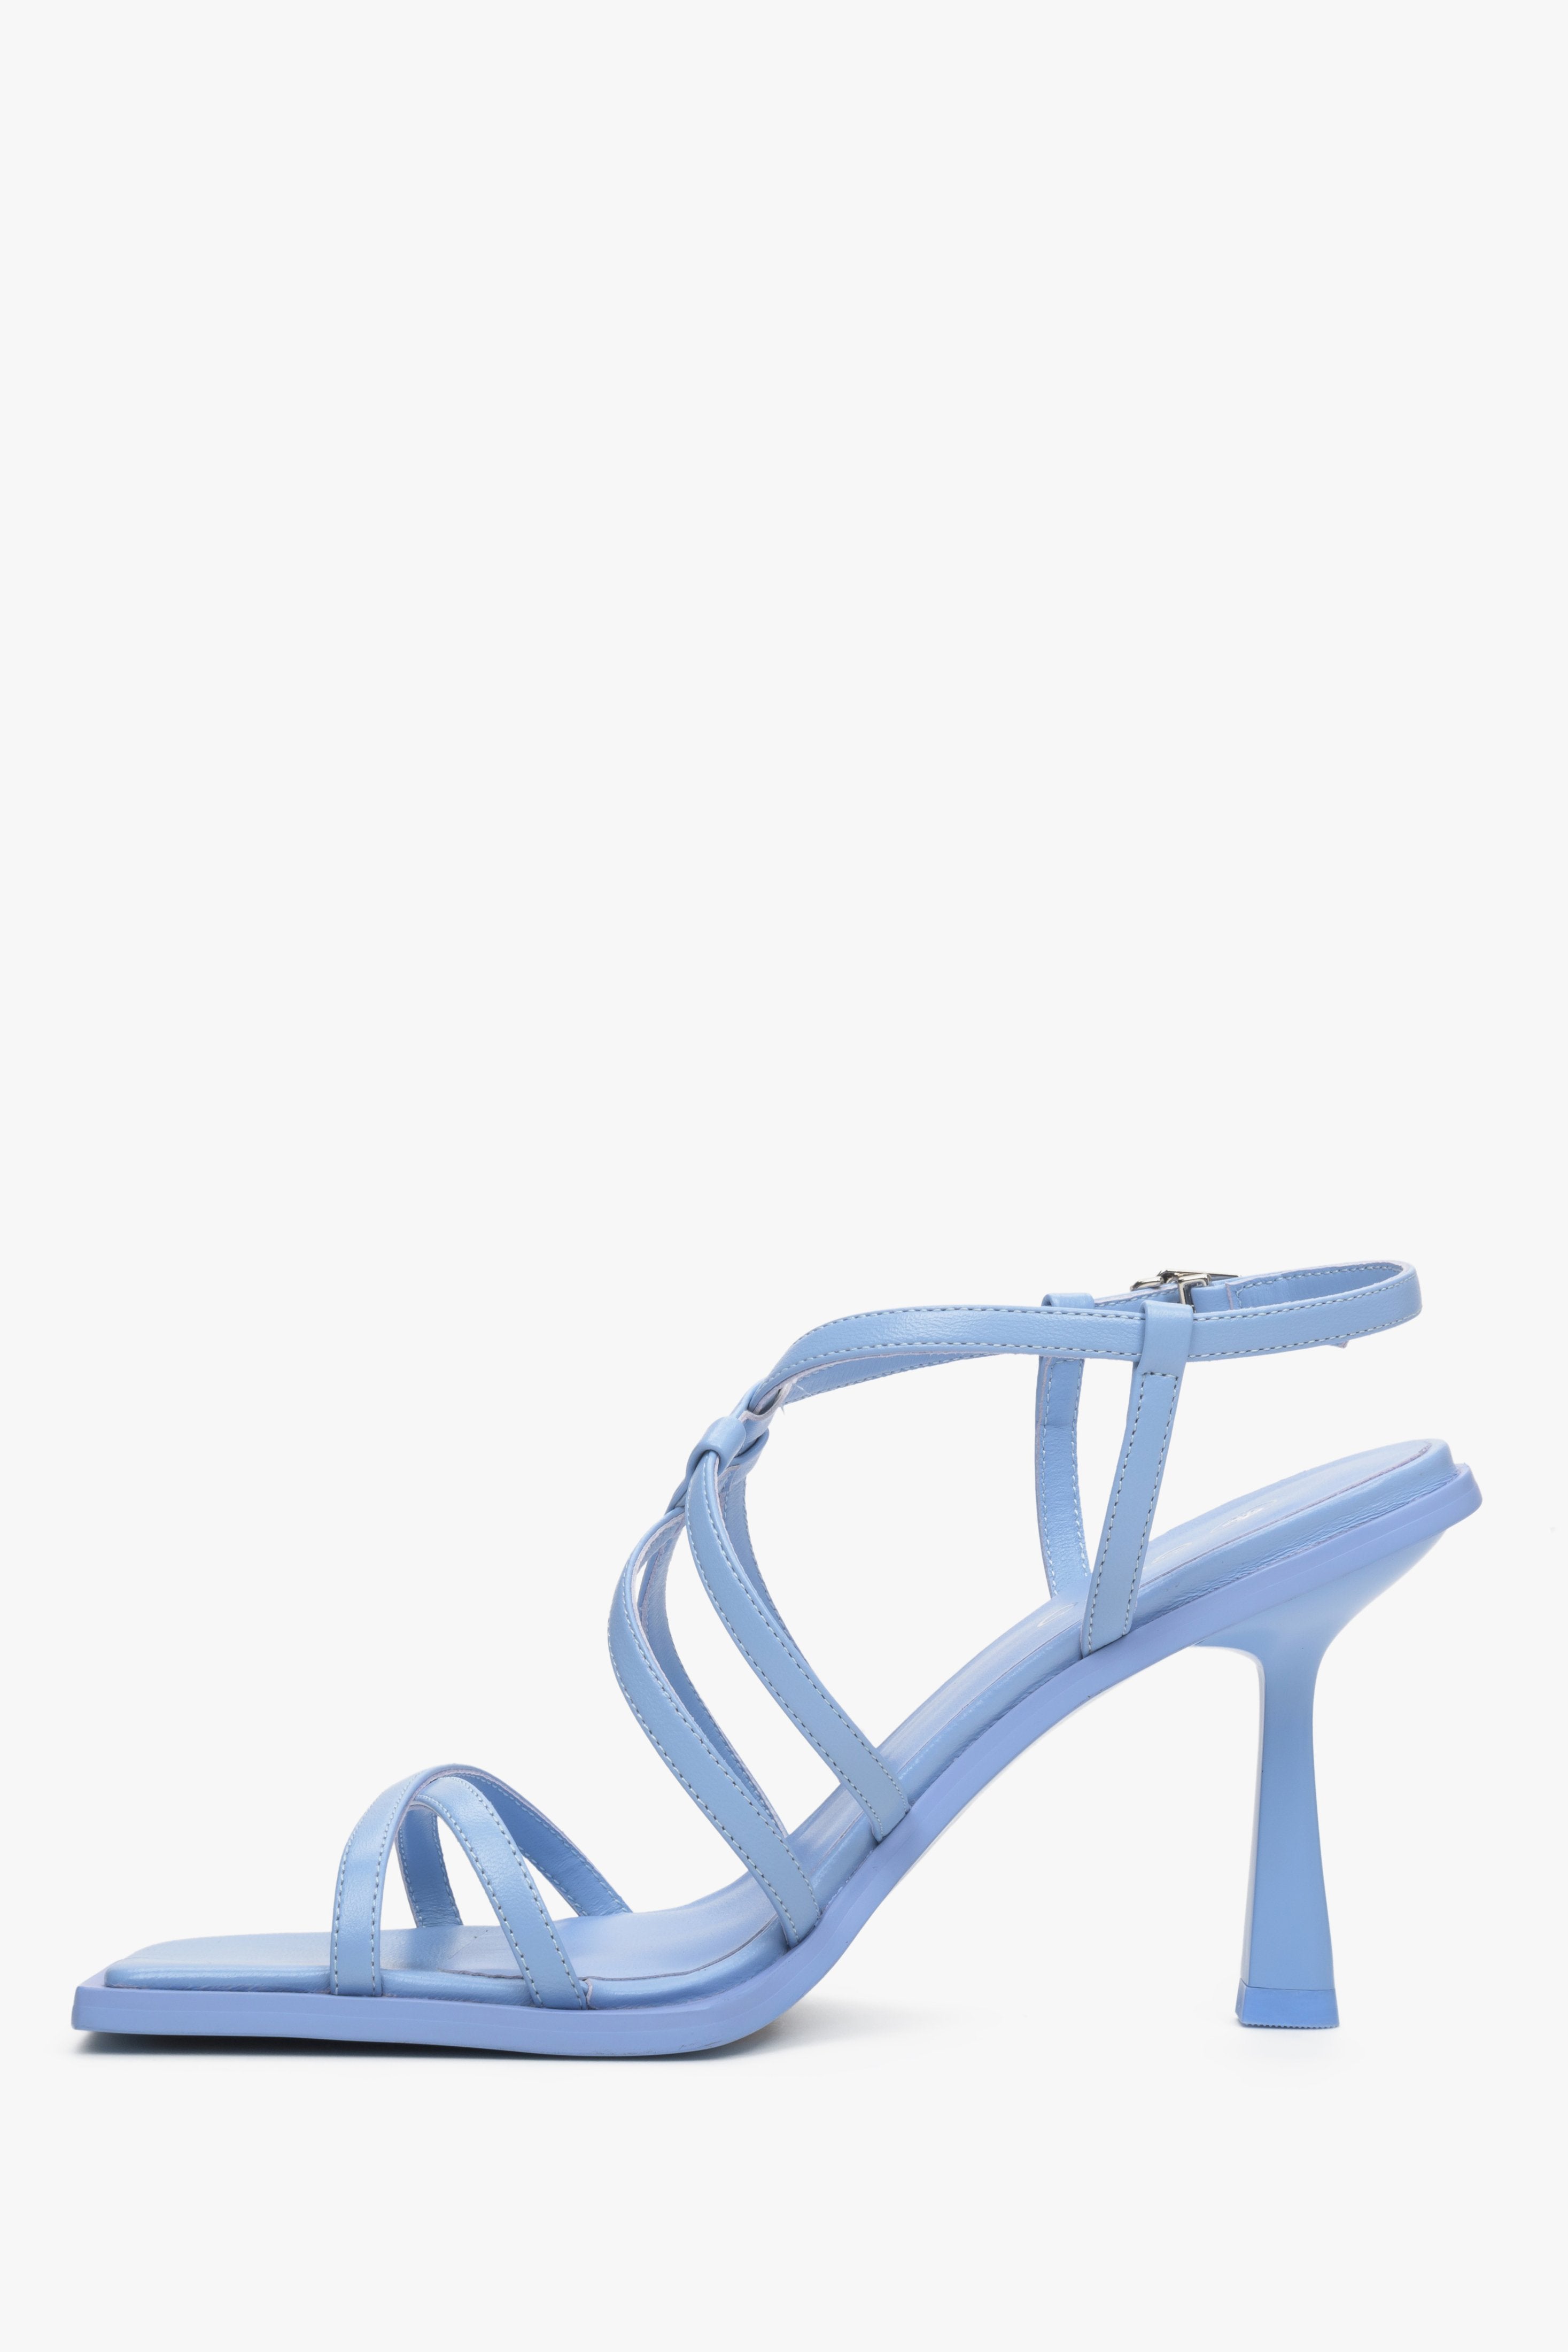 Damskie, skórzane sandały damskie na wysokim obcasie Estro w kolorze niebieskim - profil butów.